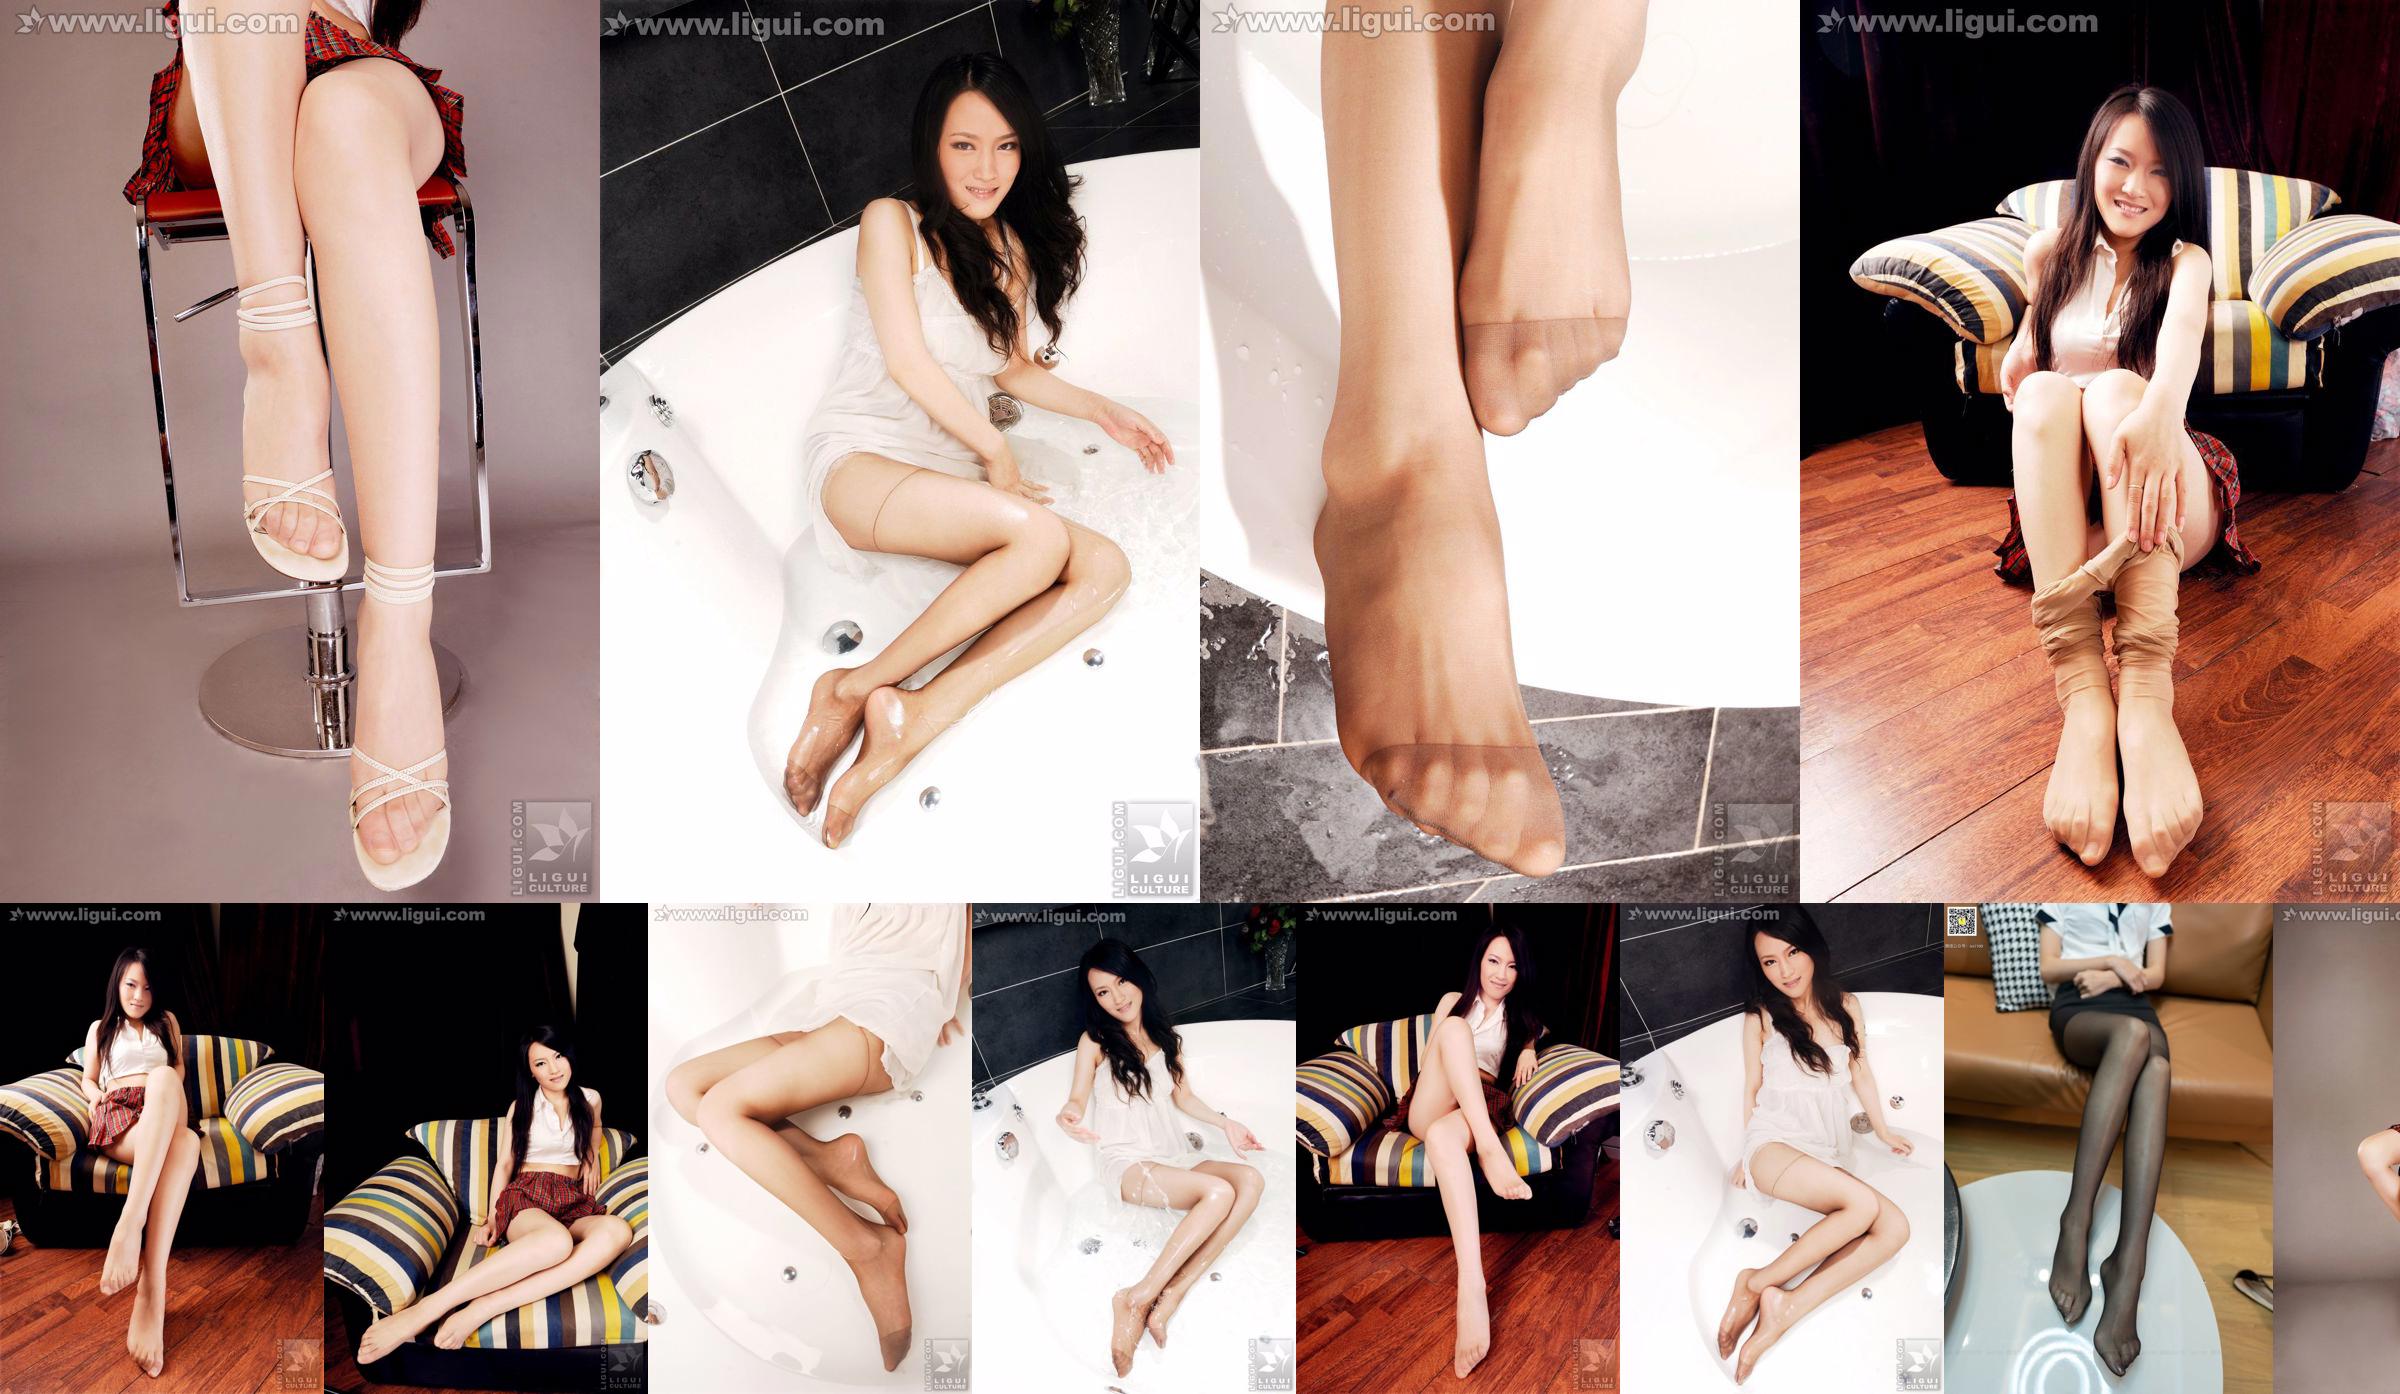 Model Wen Ting „Słodkie i urocze pończochy mięsne na wysokich obcasach” [丽 柜 LiGui] Zdjęcie pięknych nóg i nefrytowych stóp No.2d12c8 Strona 1